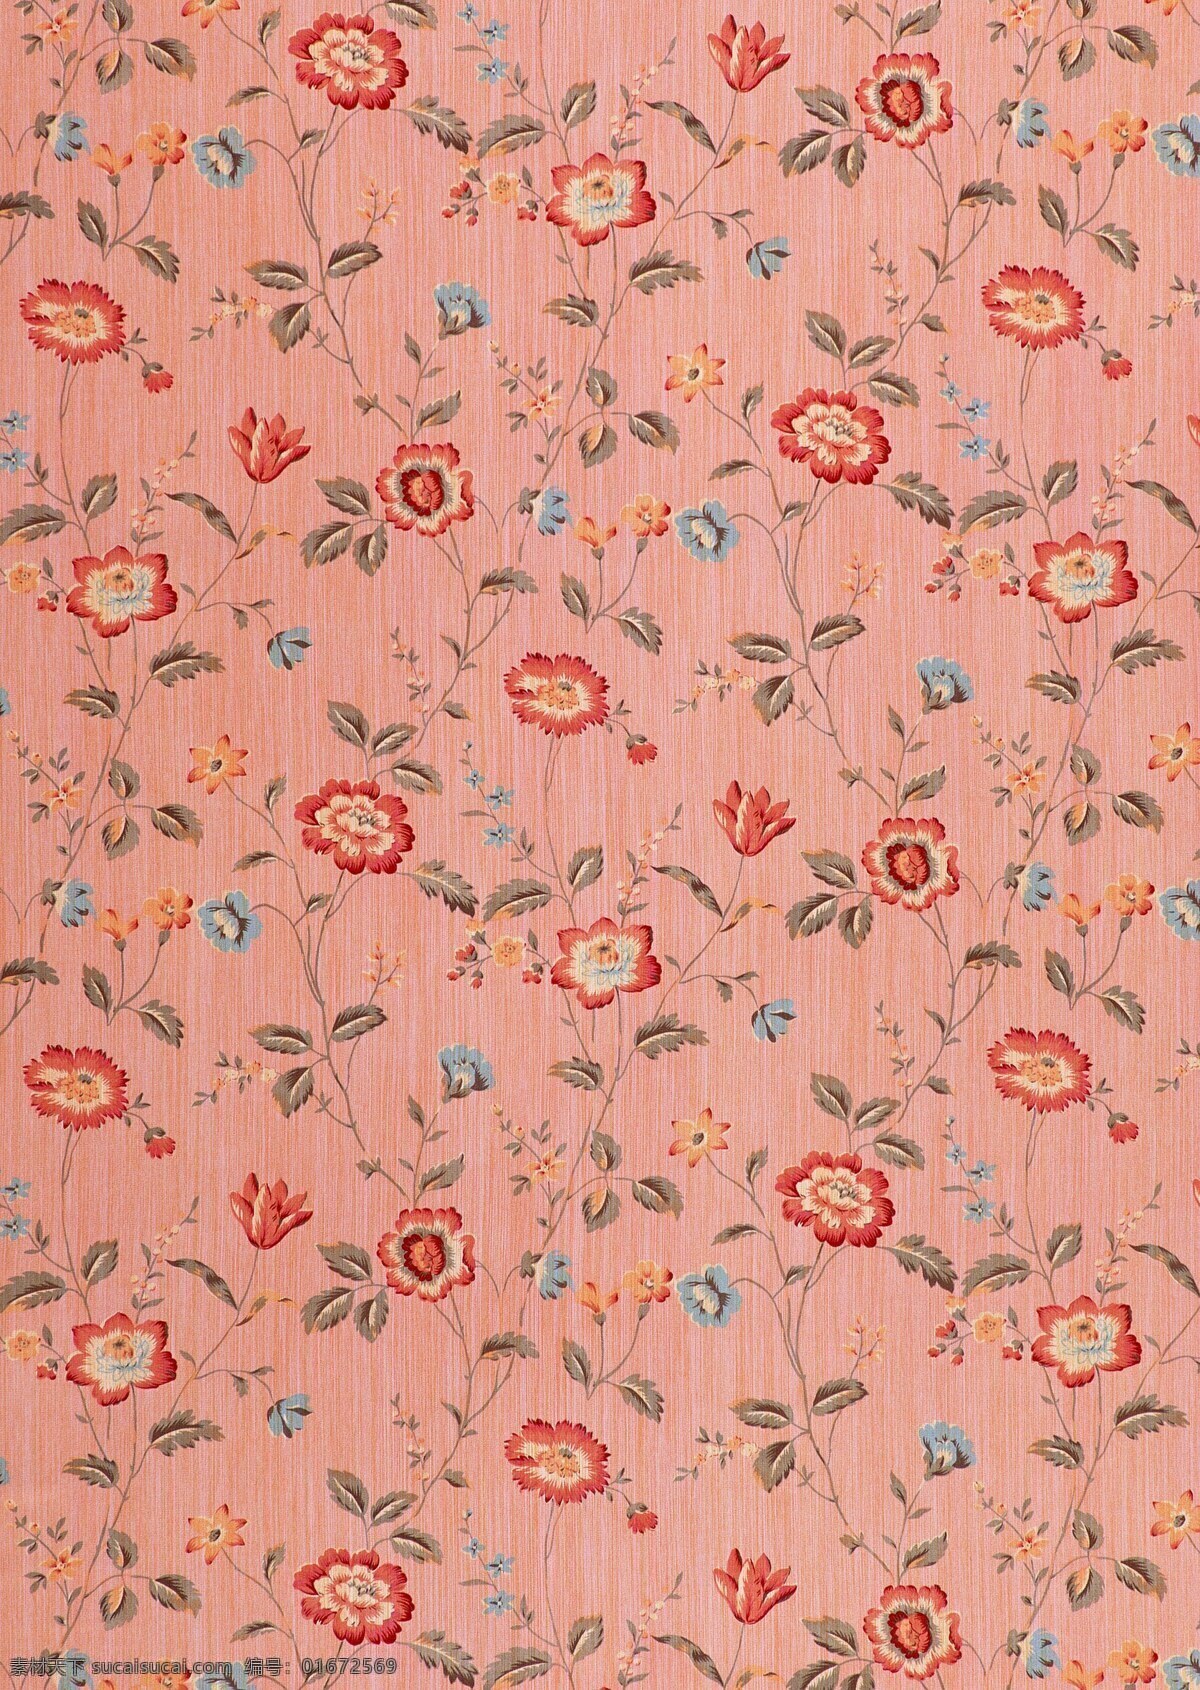 布纹 碎花 背景 古典 高雅 简单 艺术 粉红 树叶 华藤 生活素材 生活百科